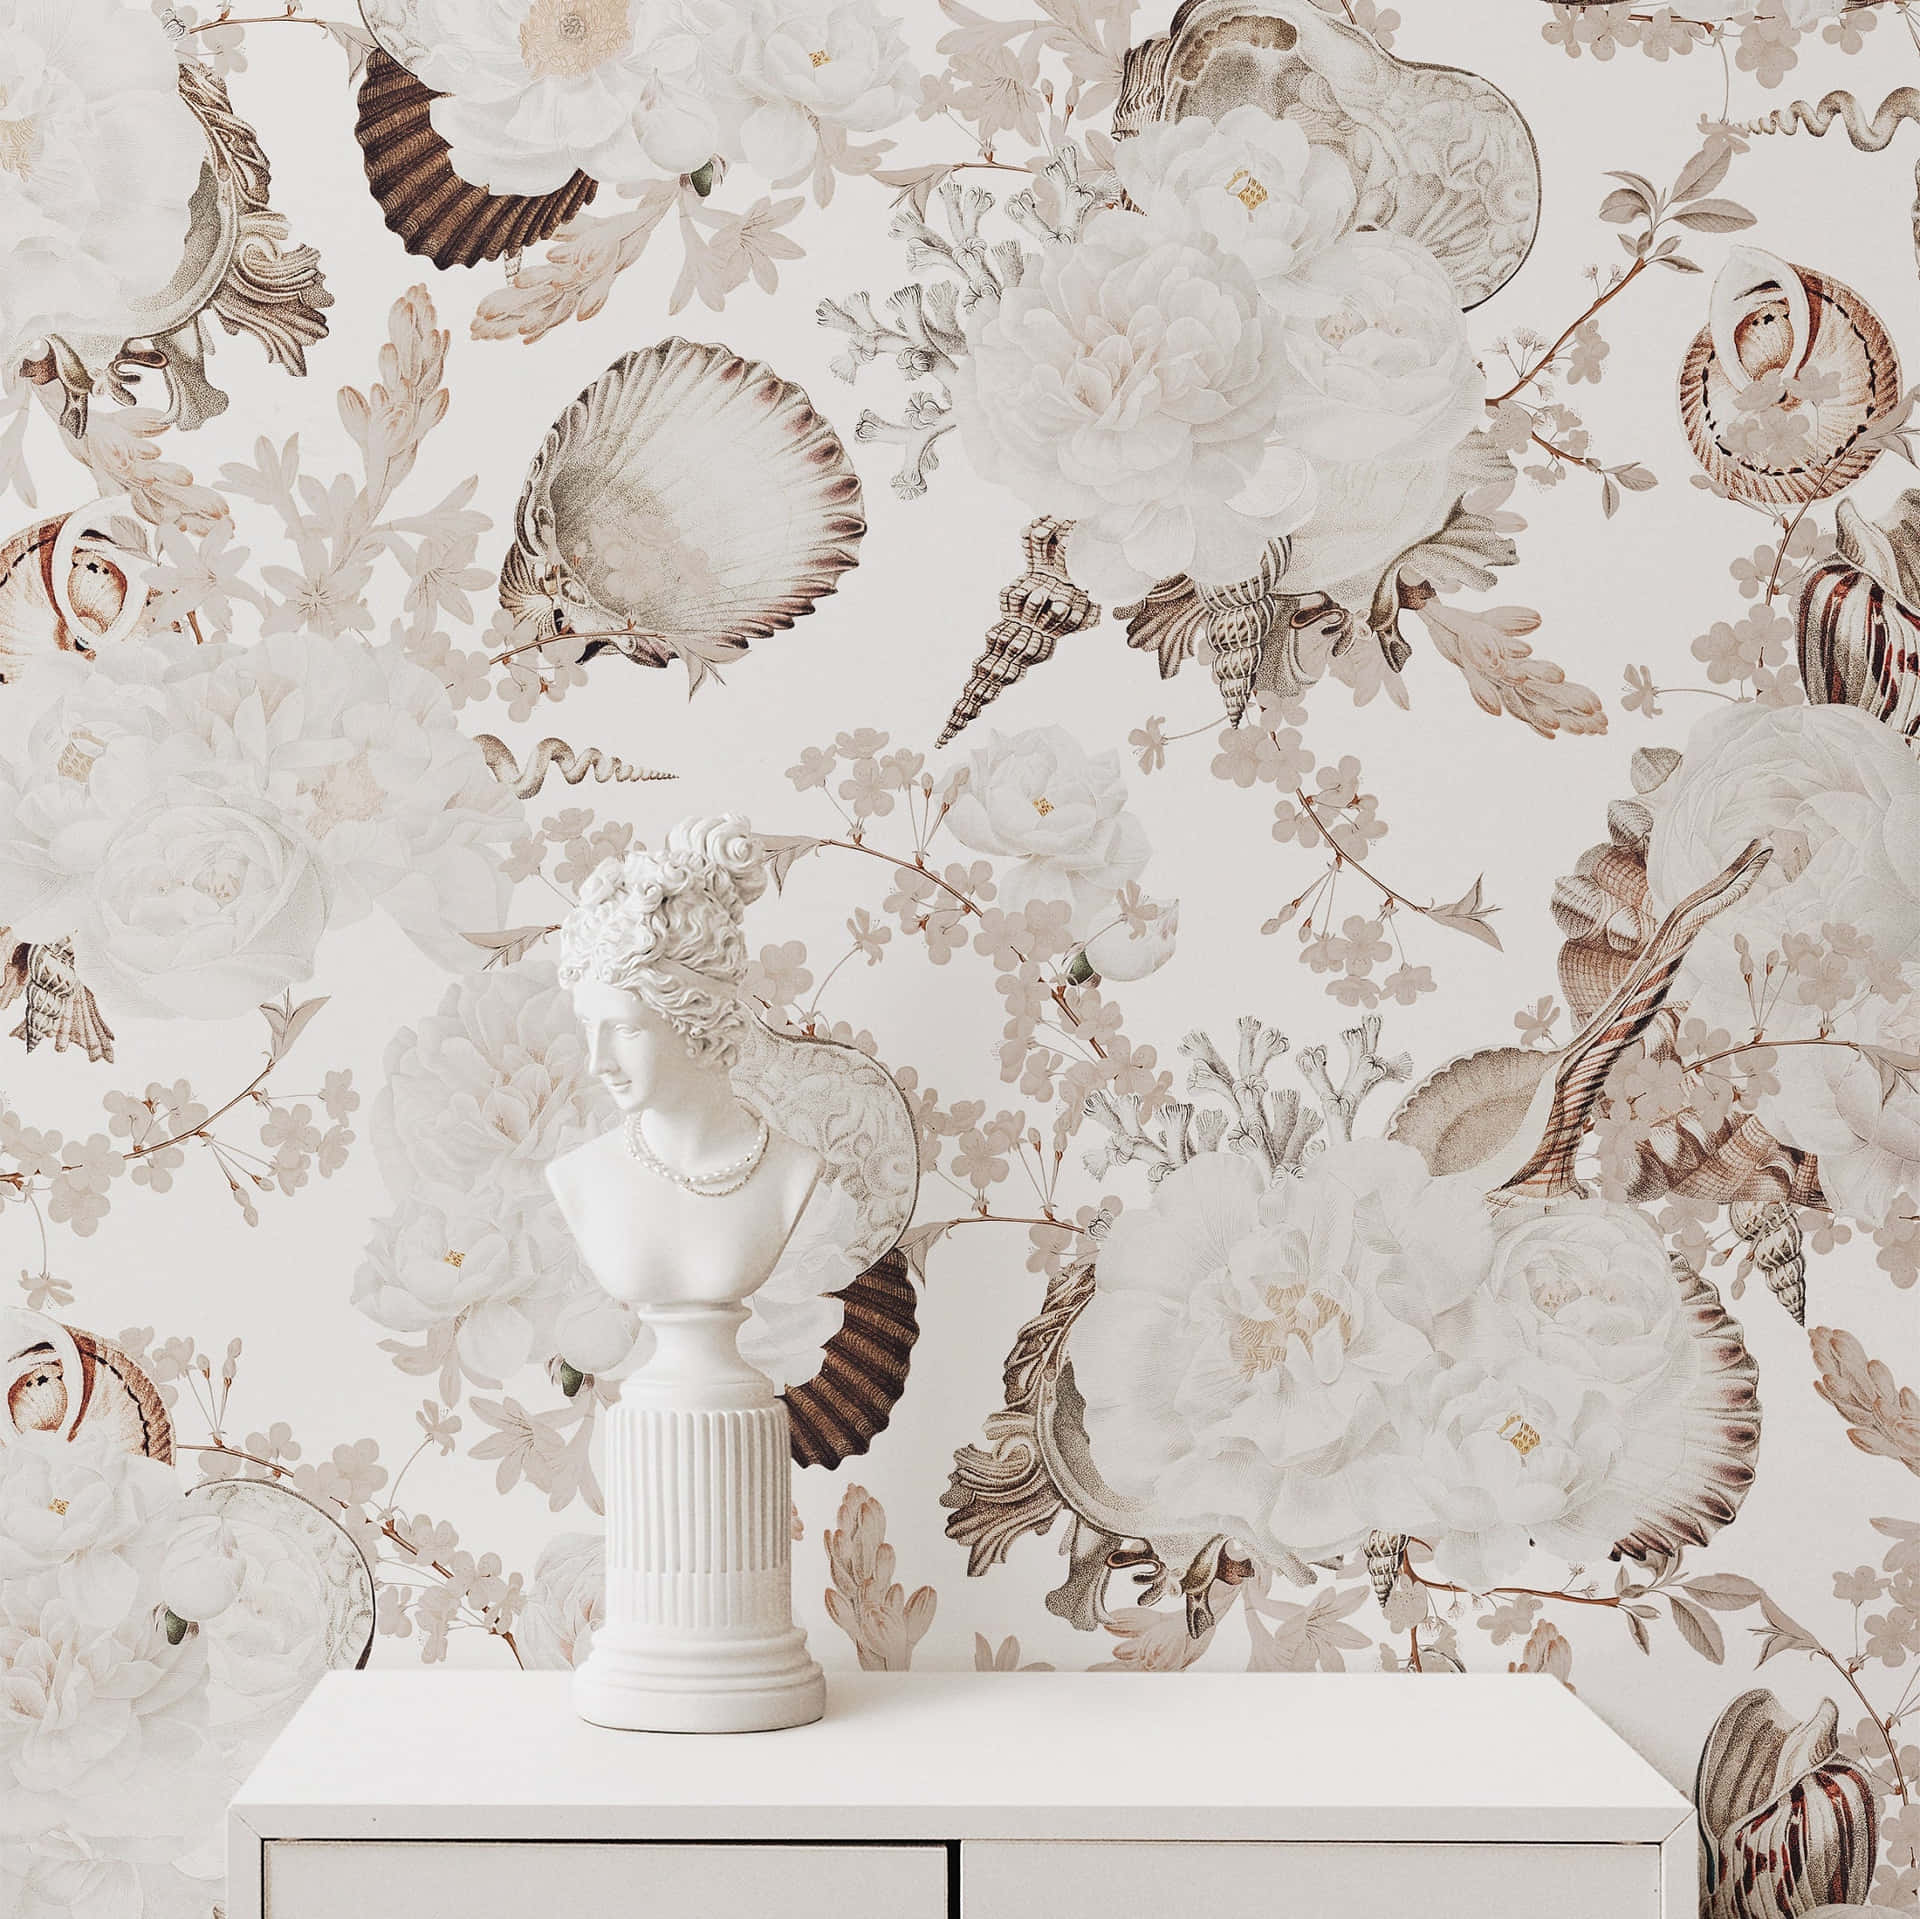 Eineweiße Vase Mit Einer Blumenvase Darauf Wallpaper